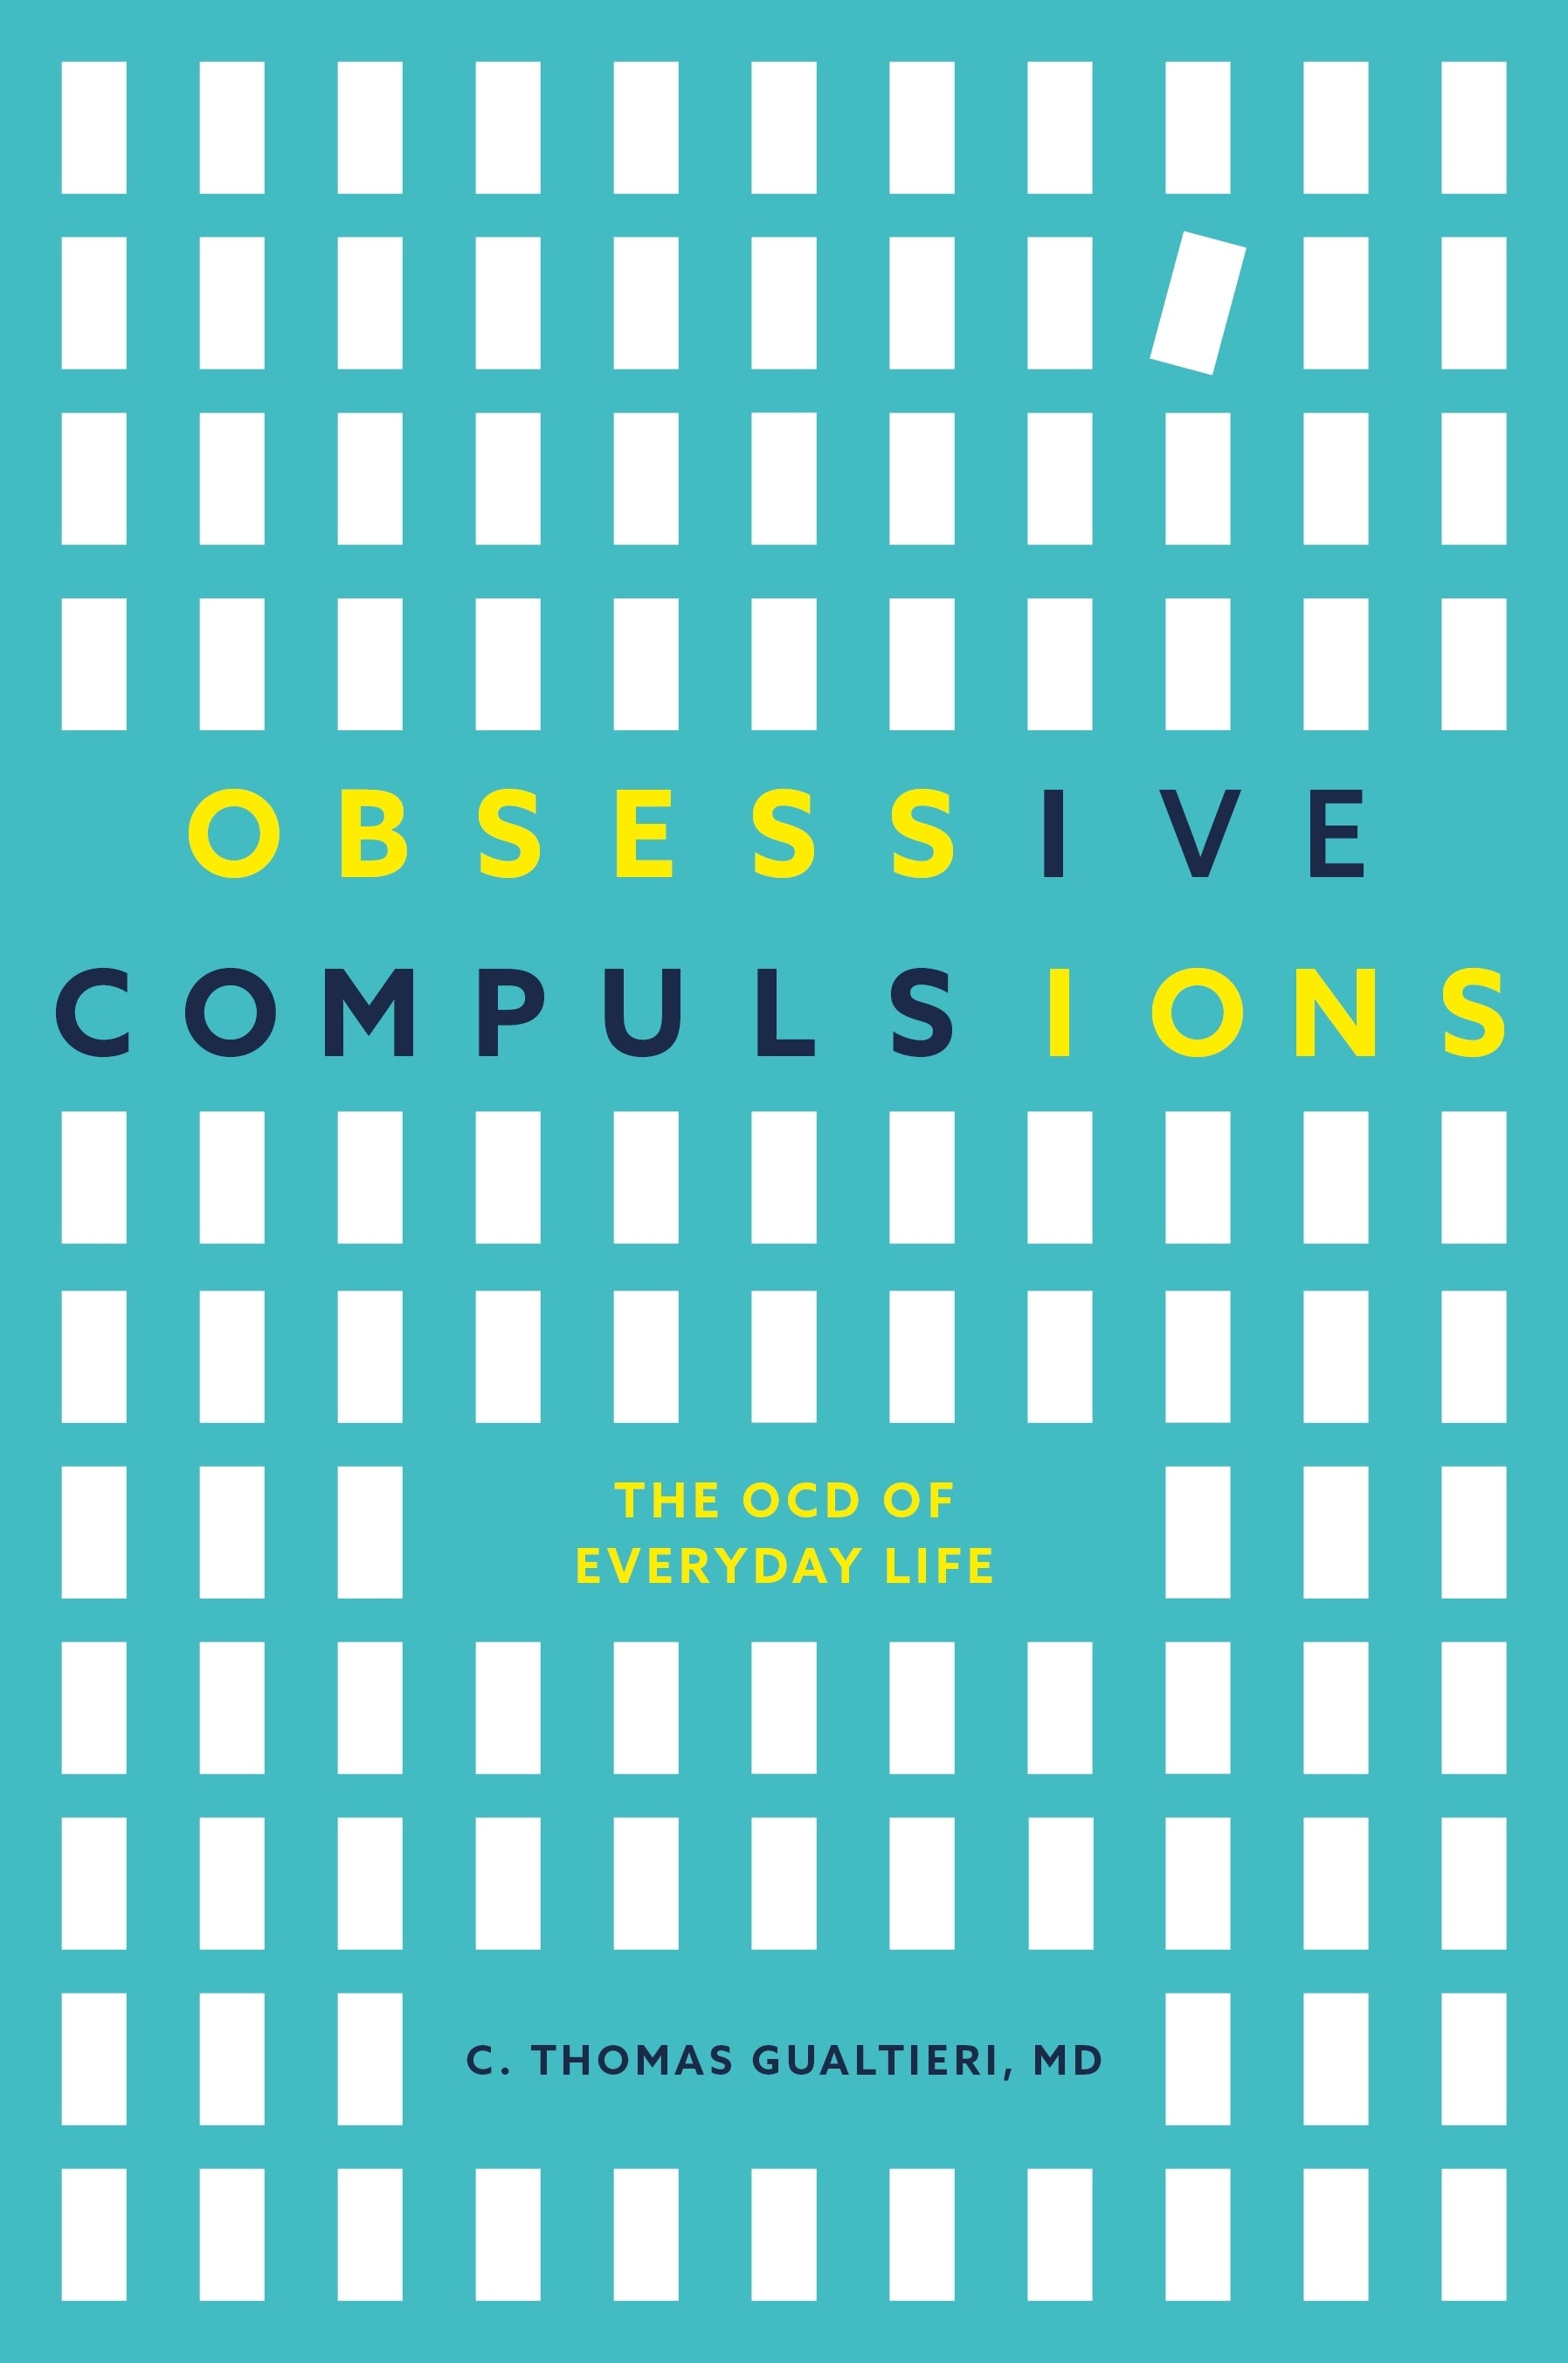 Obsessive Compulsions by C. Thomas Gualtieri